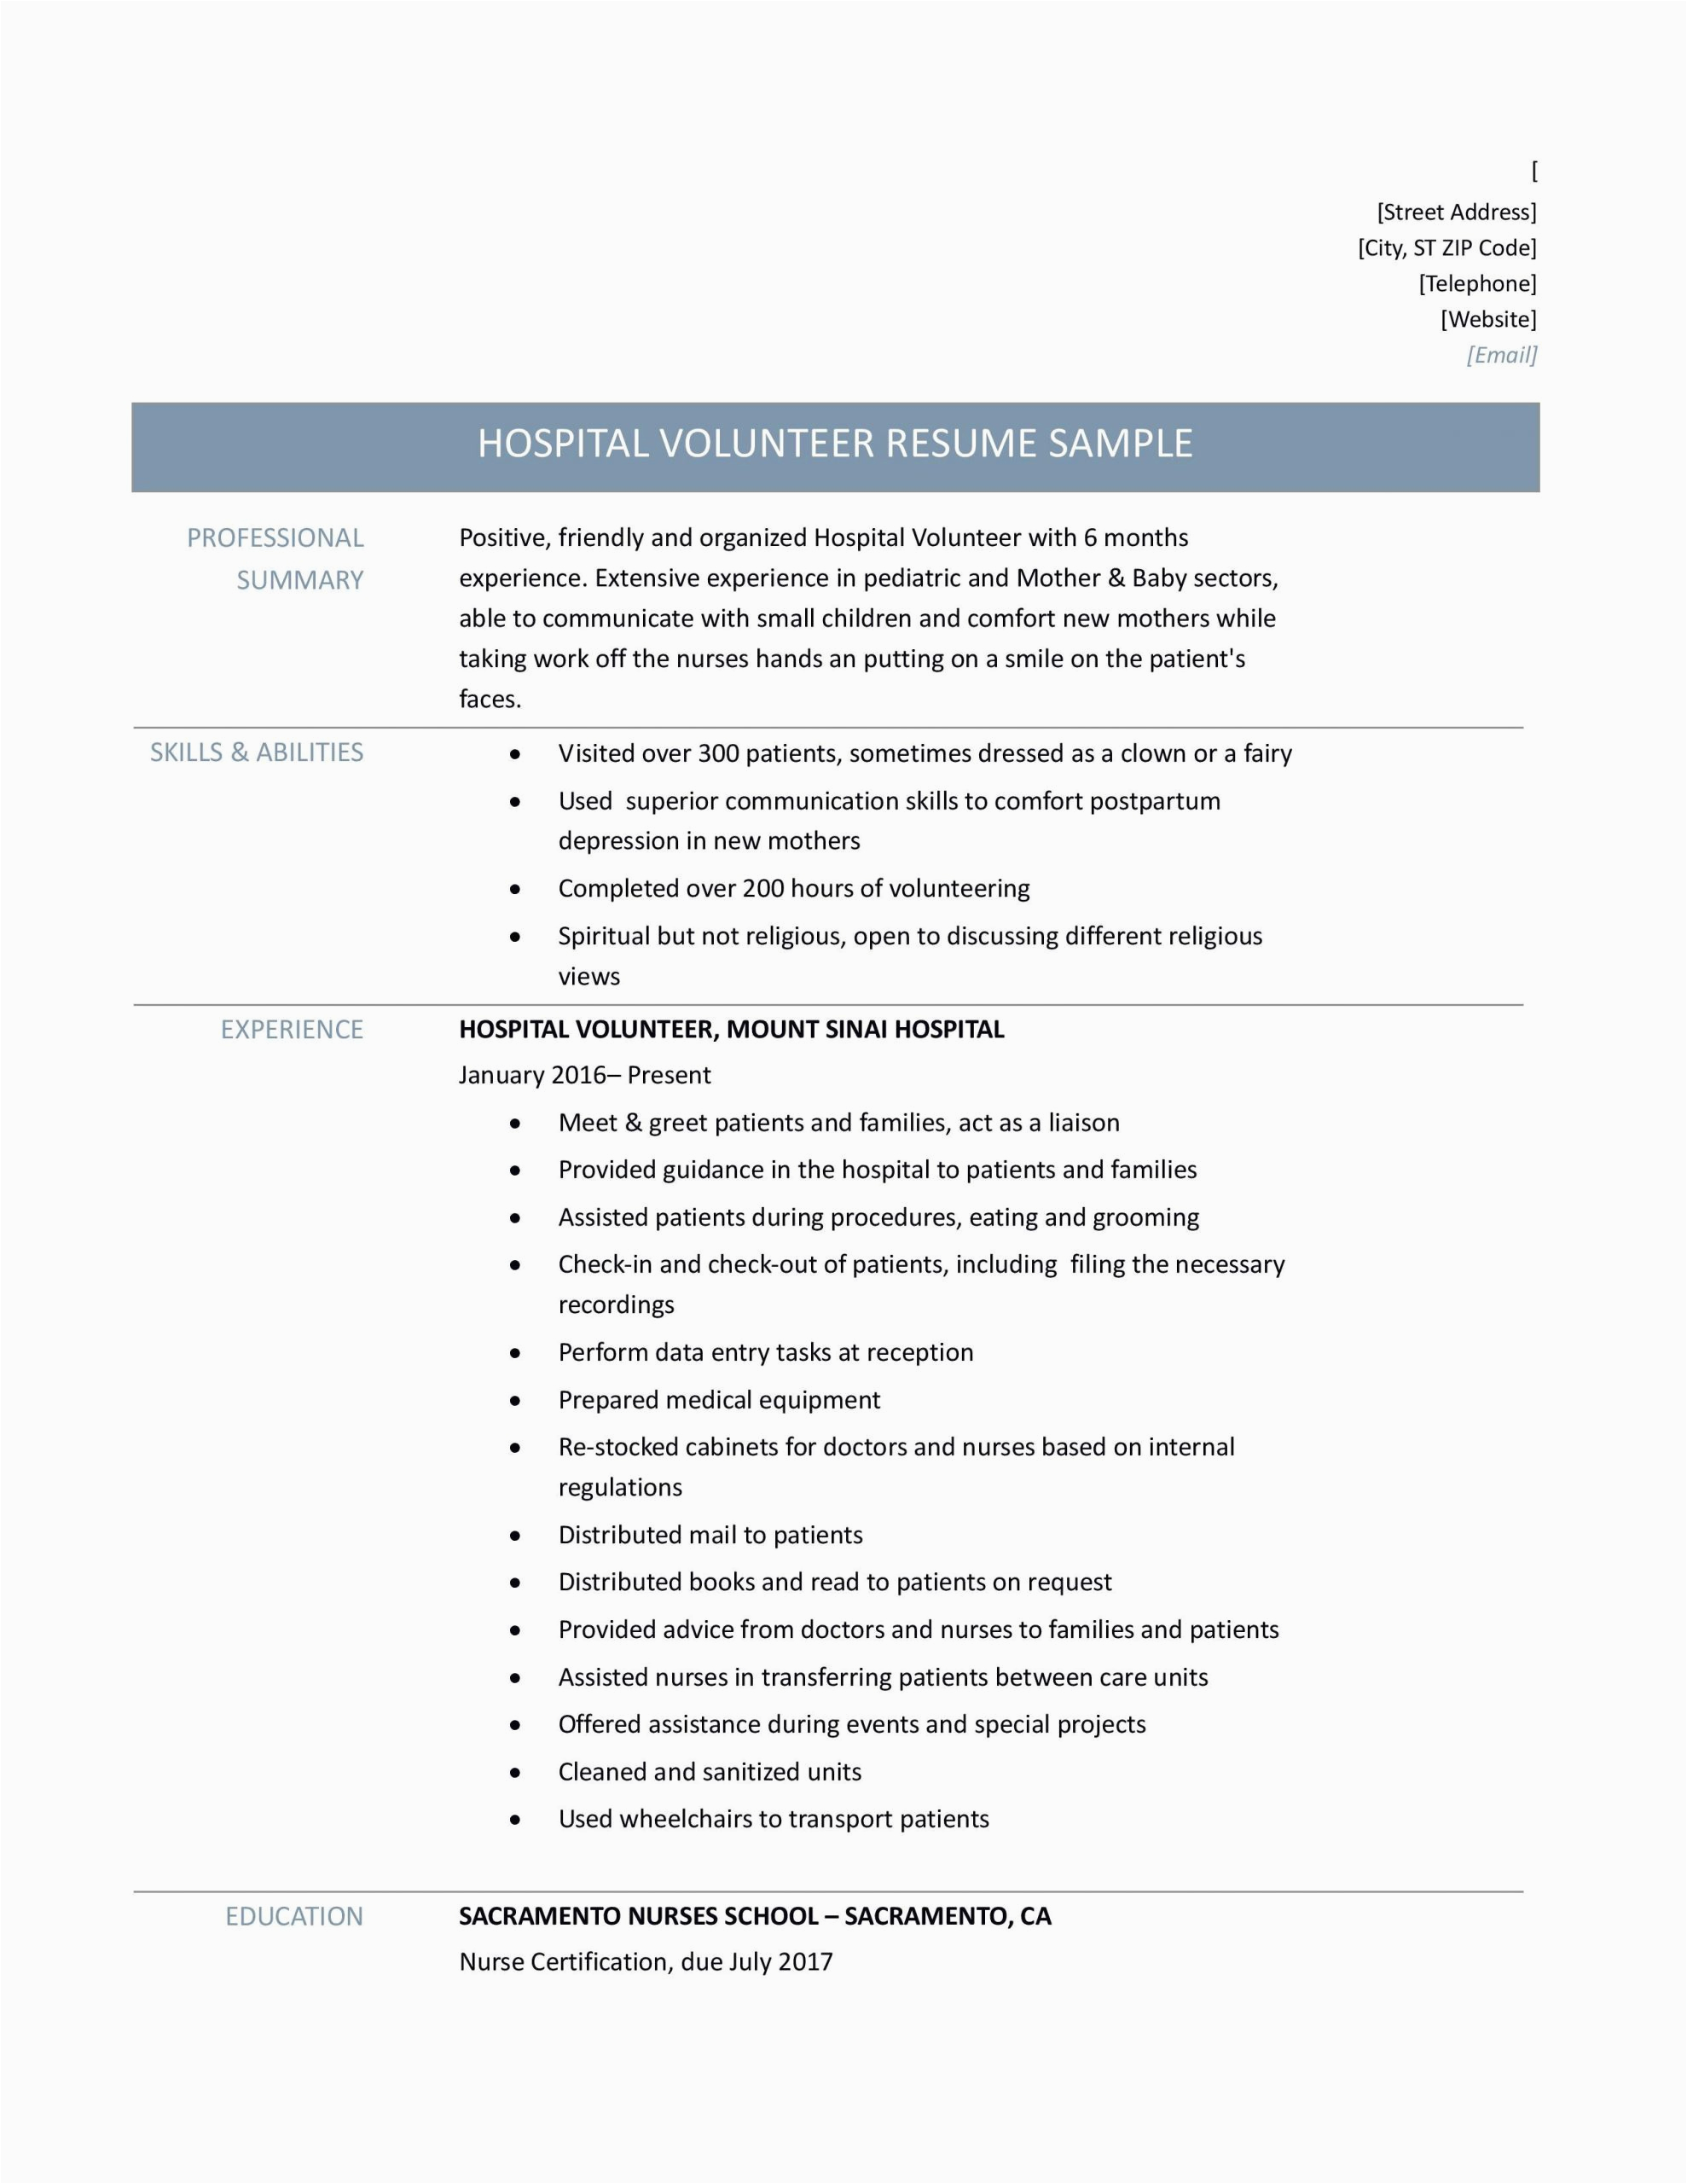 Sample Resume with Volunteer Work Included Hospital Volunteer Duties Resume